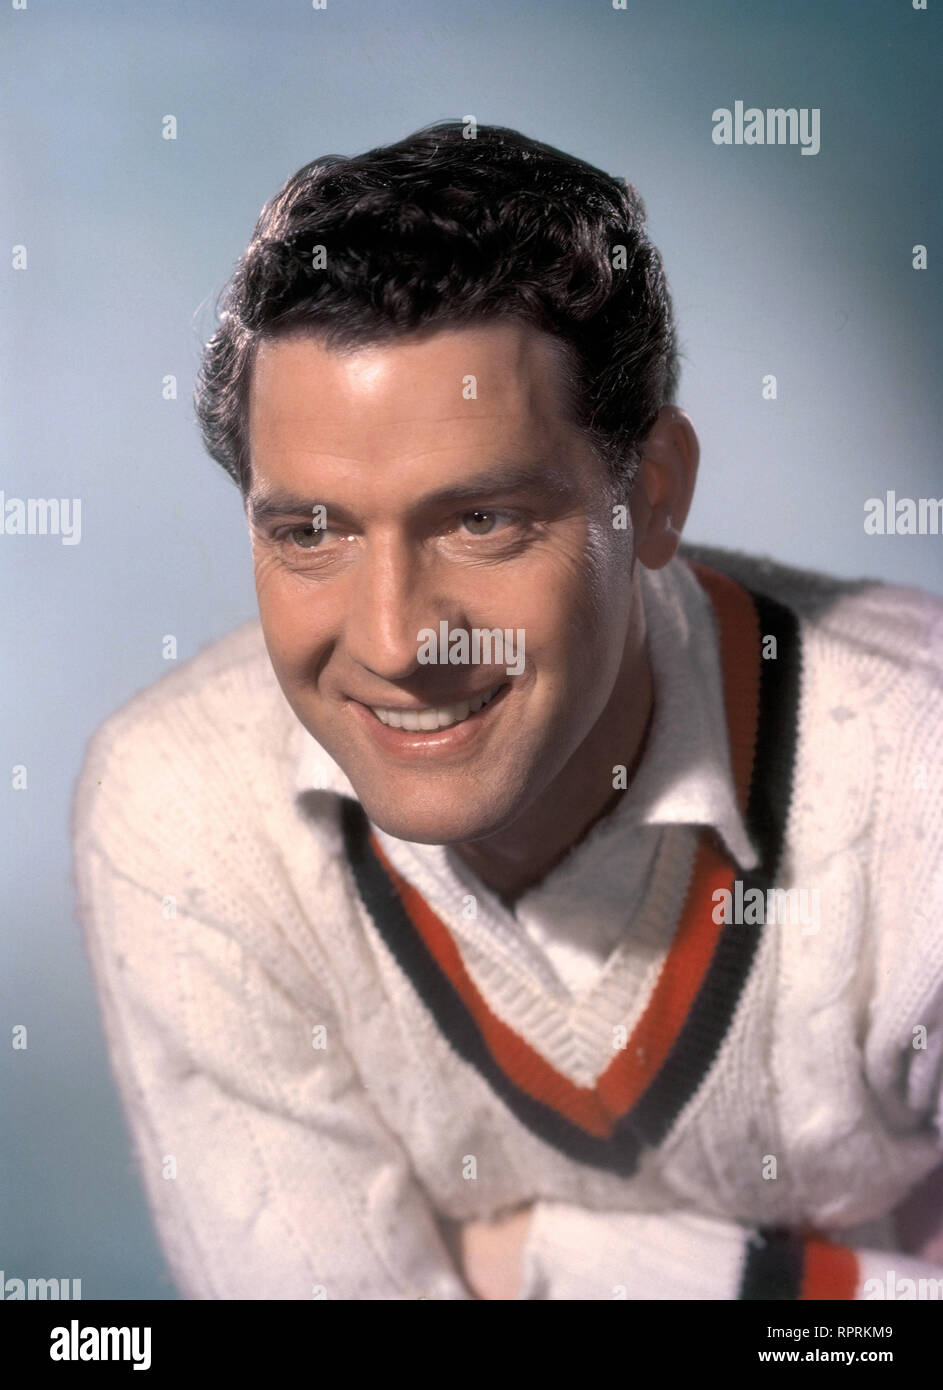 Paul Hubschmid - Schweizer Schauspieler - Studioaufnahme, ca. 1959. Swiss actor Paul Hubschmid - Studio Still, 1959. Stock Photo